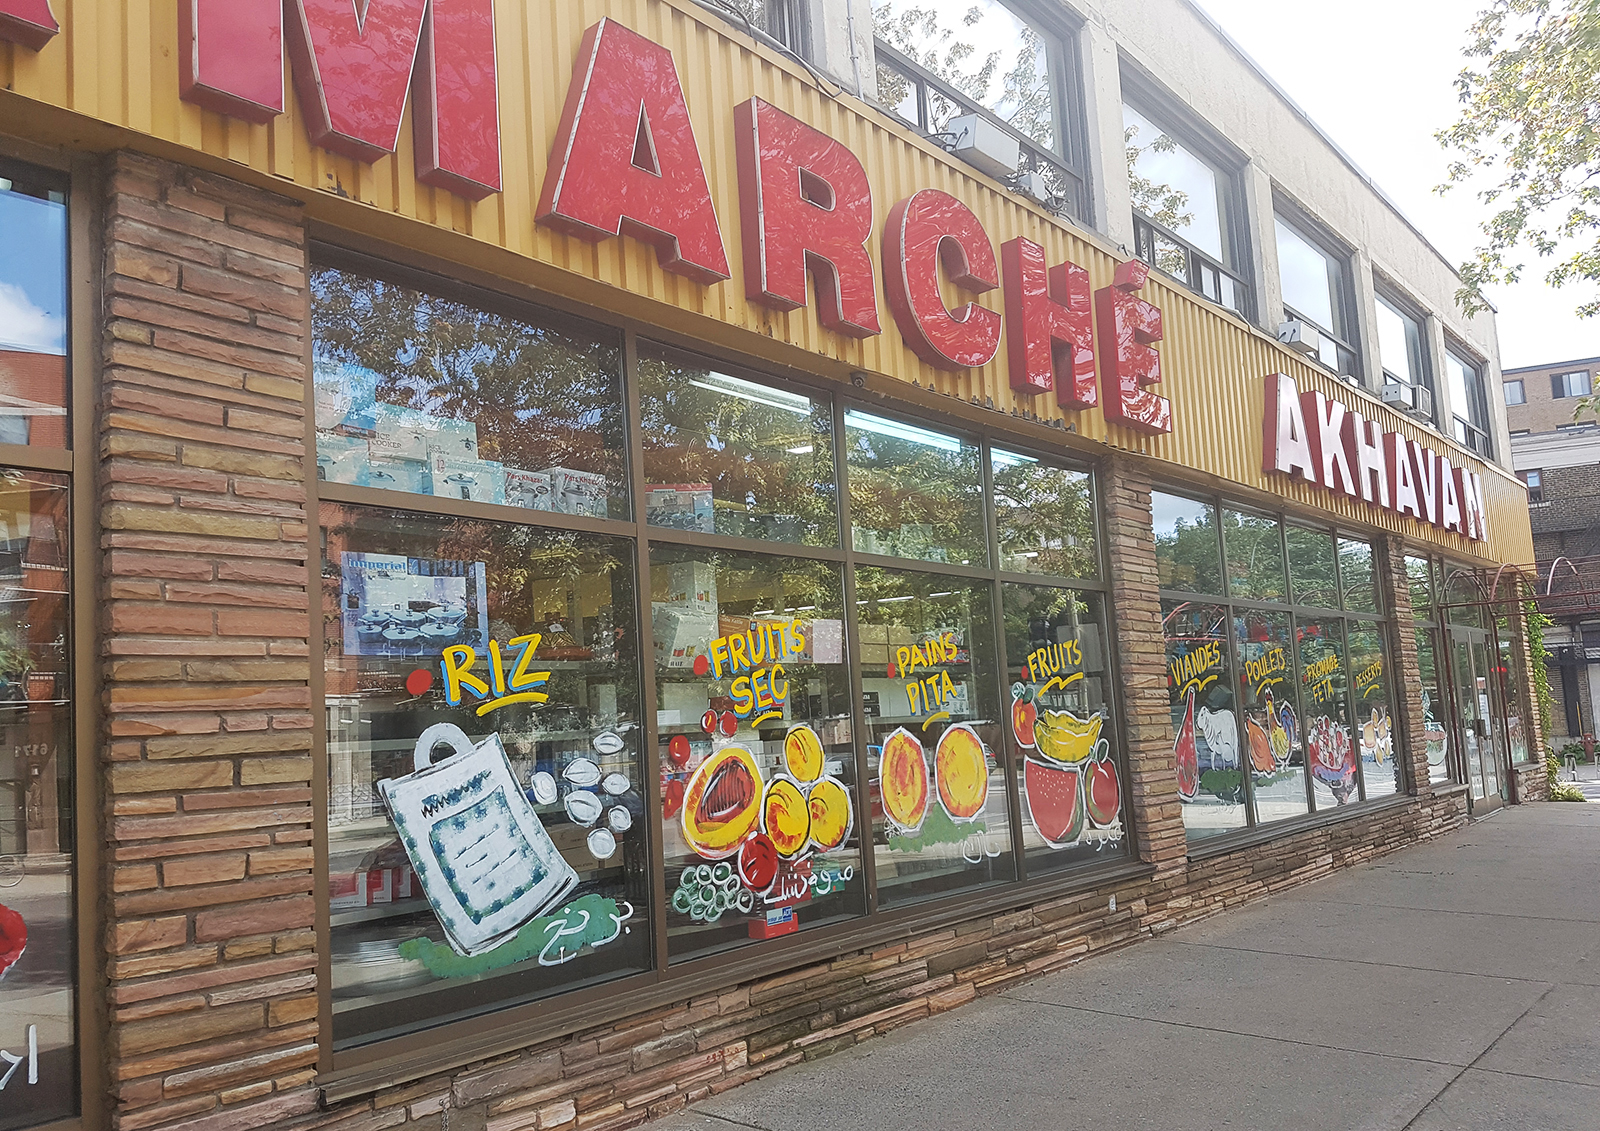 فروشگاه اخوان بزرگترین سوپرمارکت ایرانی در مونترال - شهر مونترال